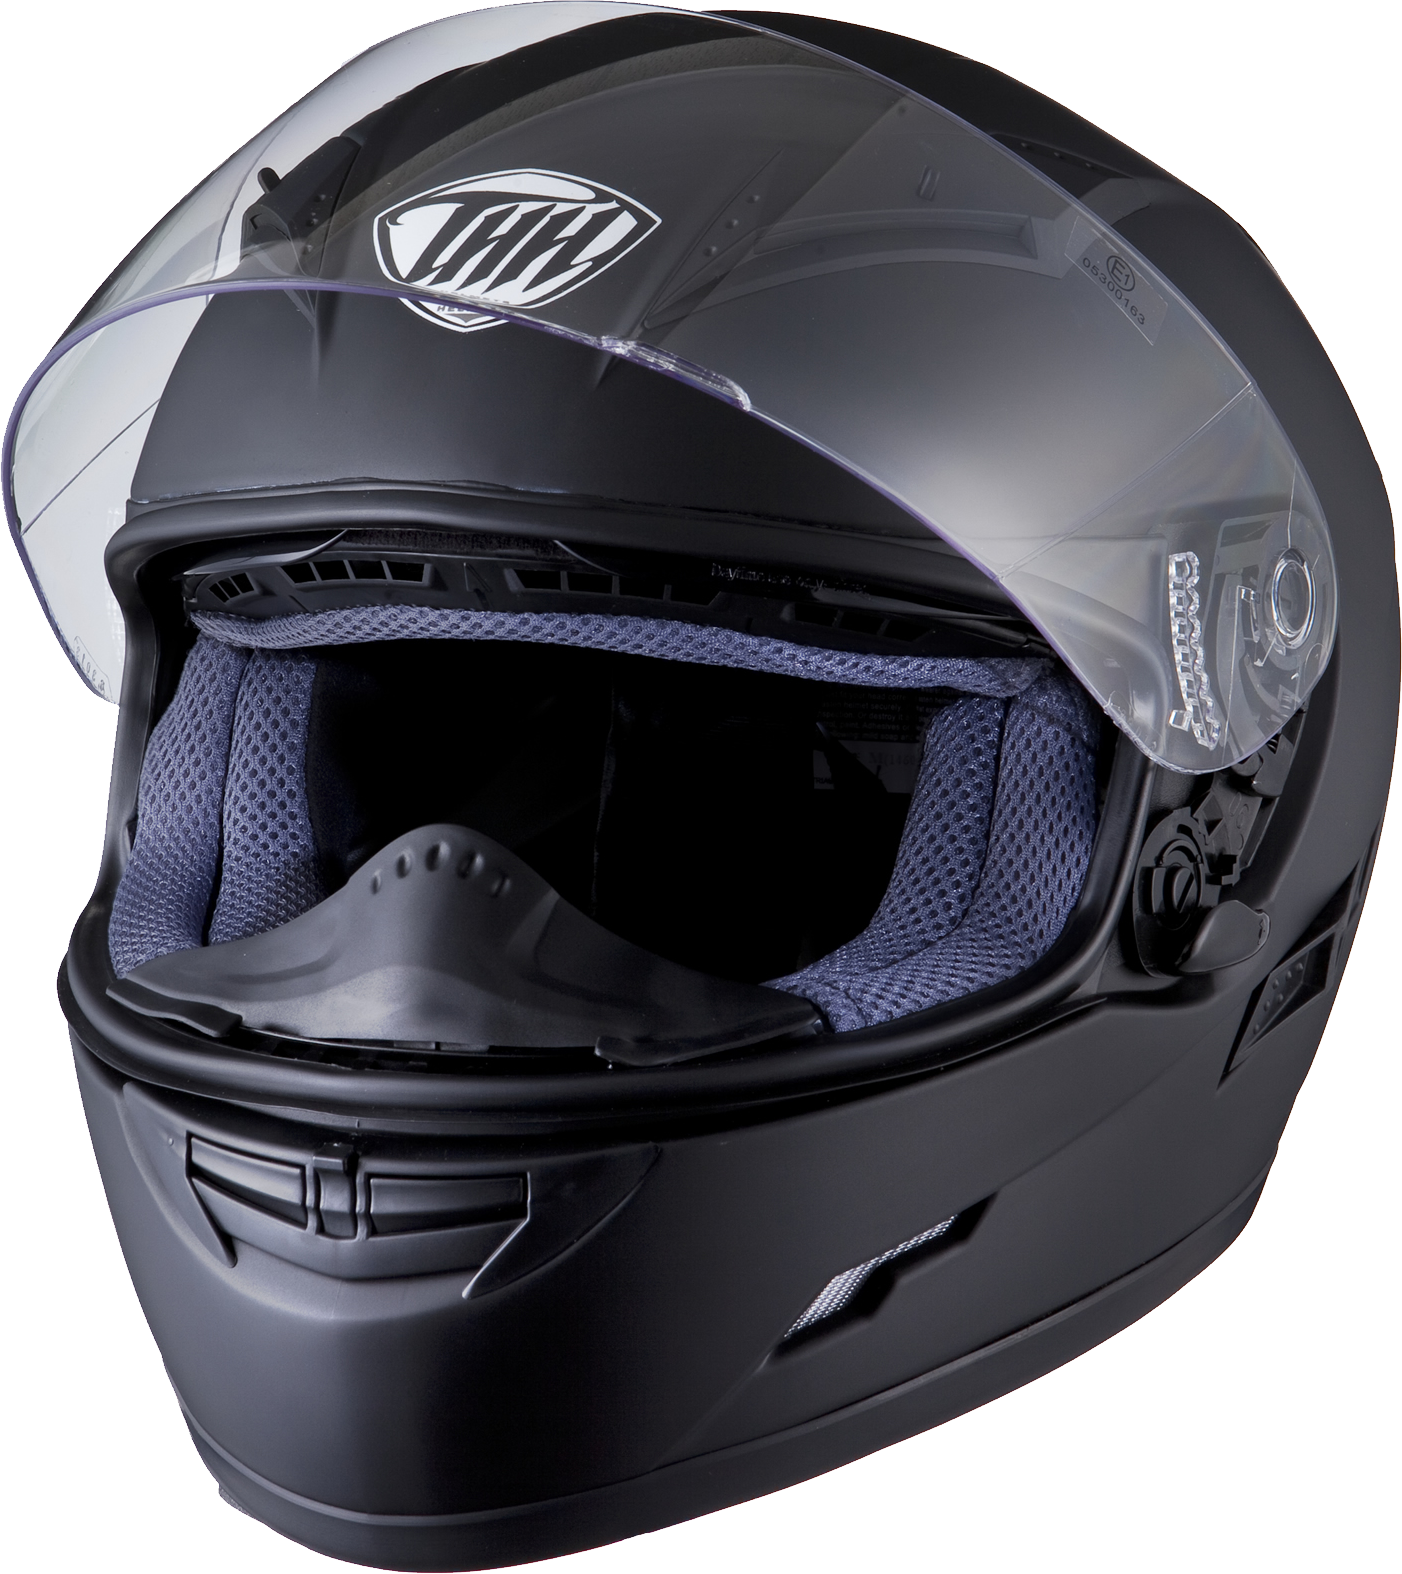 Motorcycle Helmet Png Image, Moto Helmet - Motorcycle Helmet, Transparent background PNG HD thumbnail